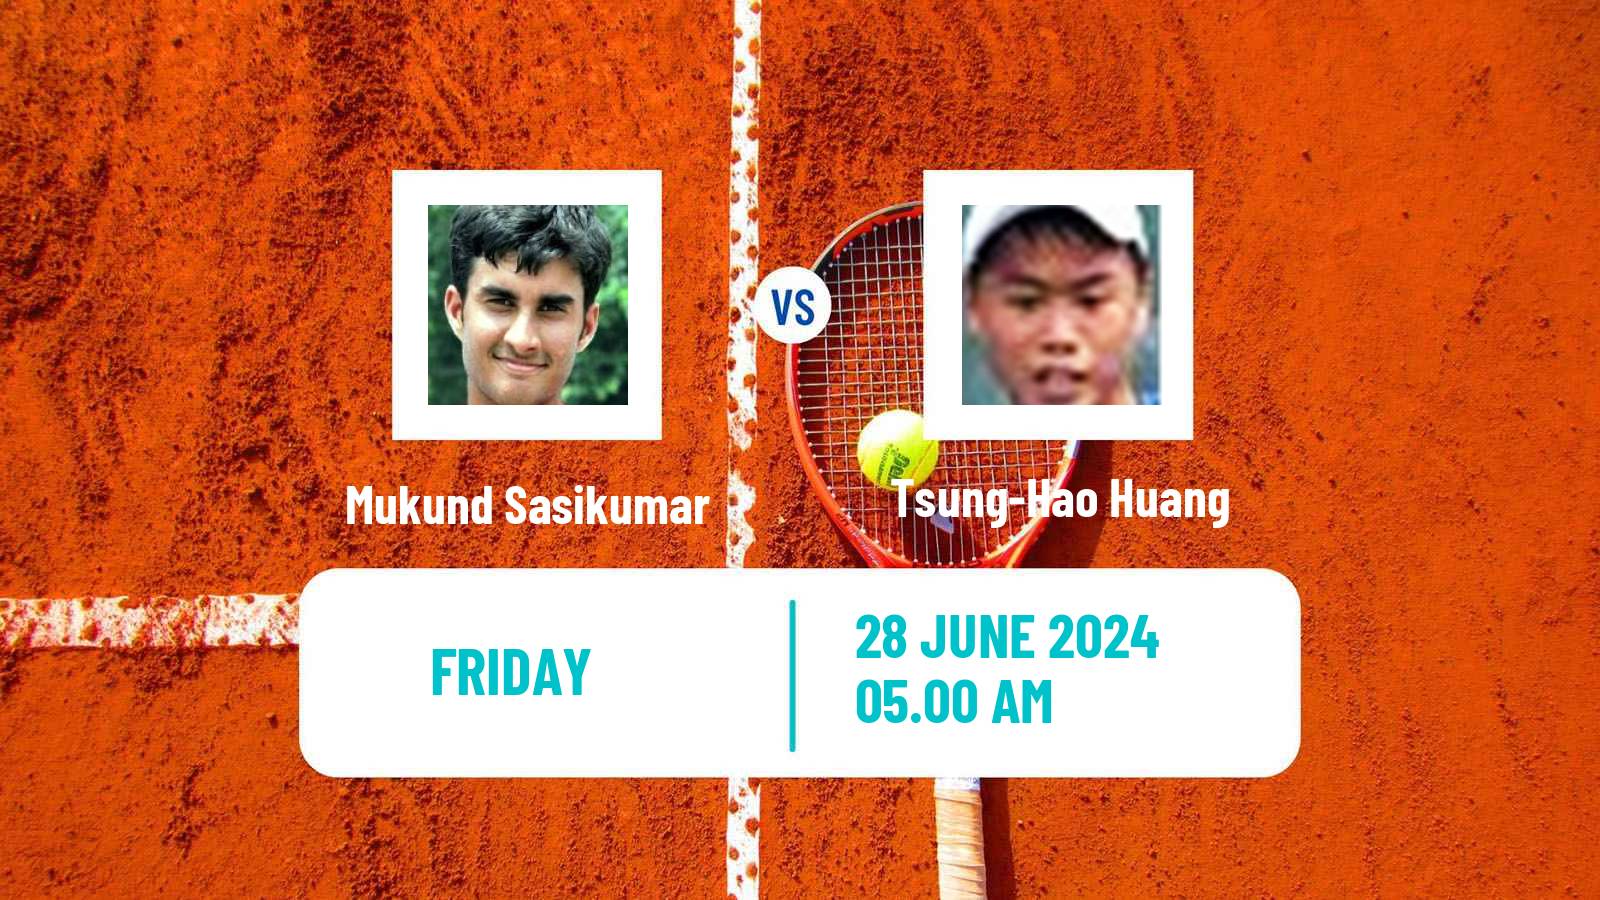 Tennis ITF M15 Tianjin Men Mukund Sasikumar - Tsung-Hao Huang